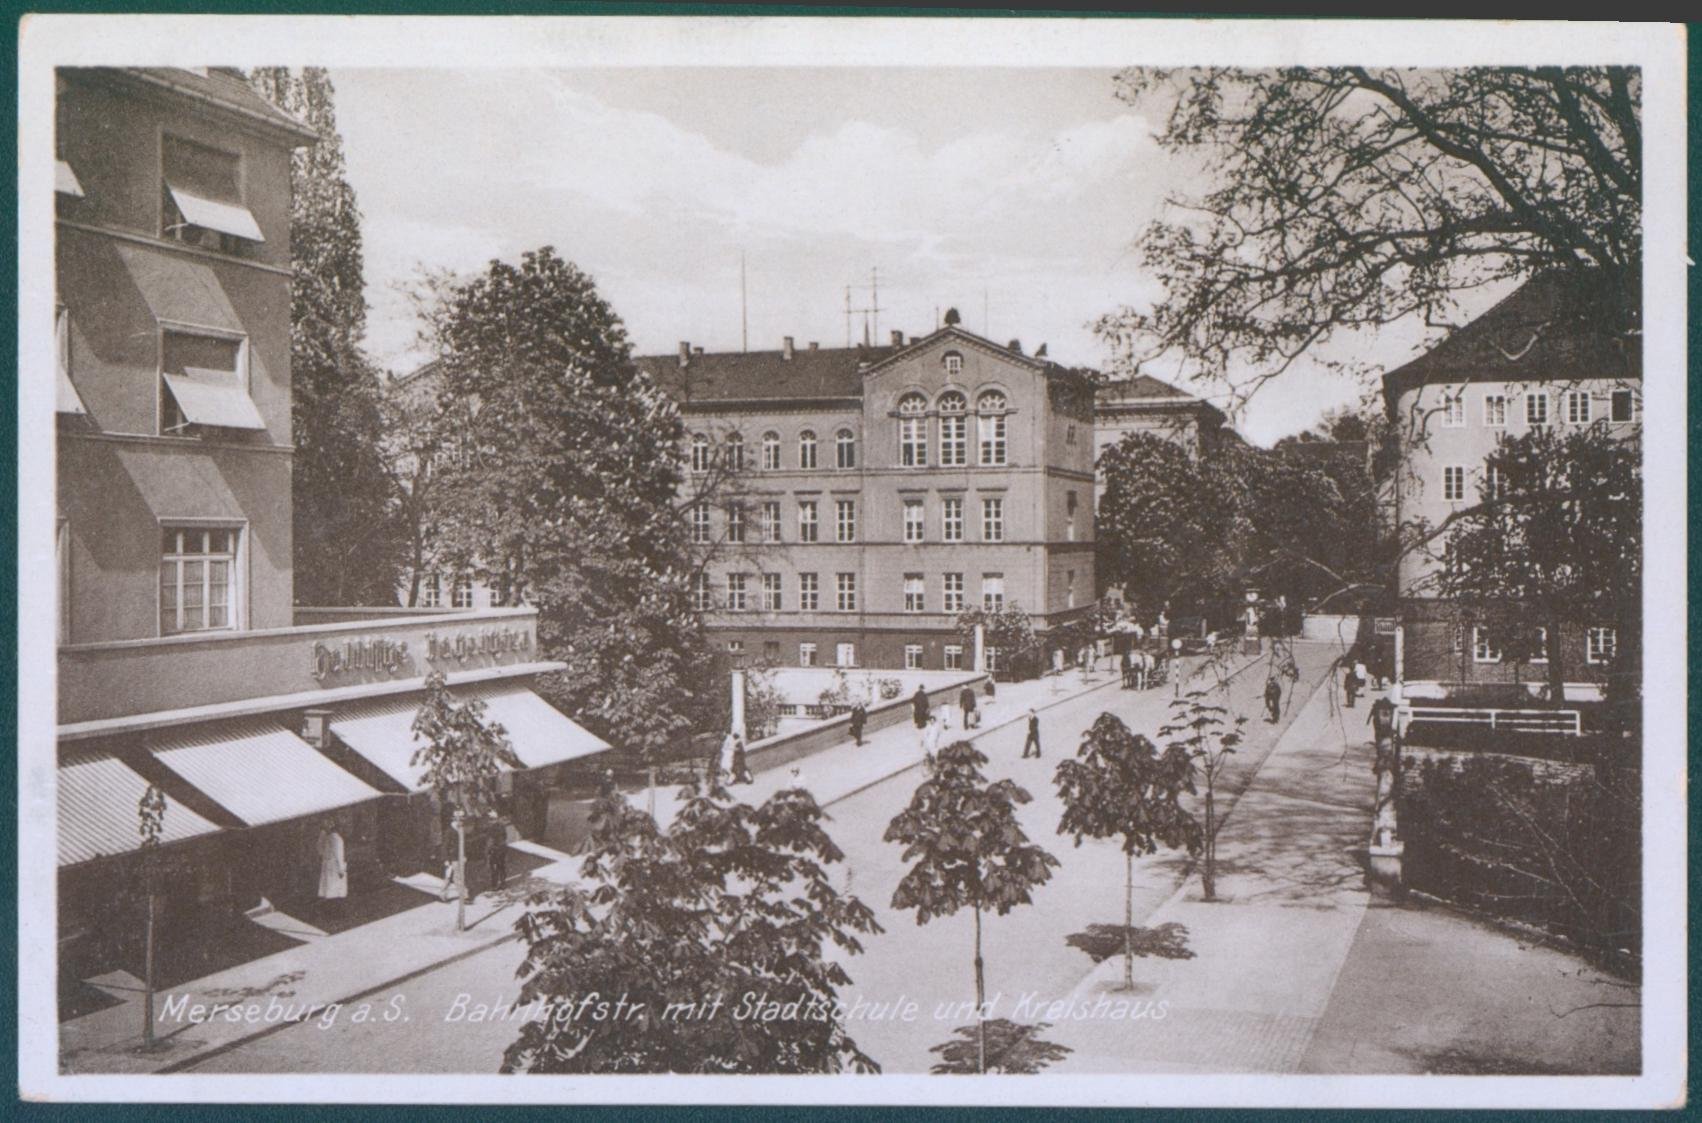 Merseburg, Bahnhofstraße mit Stadtschule und Kreishaus (Kulturhistorisches Museum Schloss Merseburg CC BY-NC-SA)